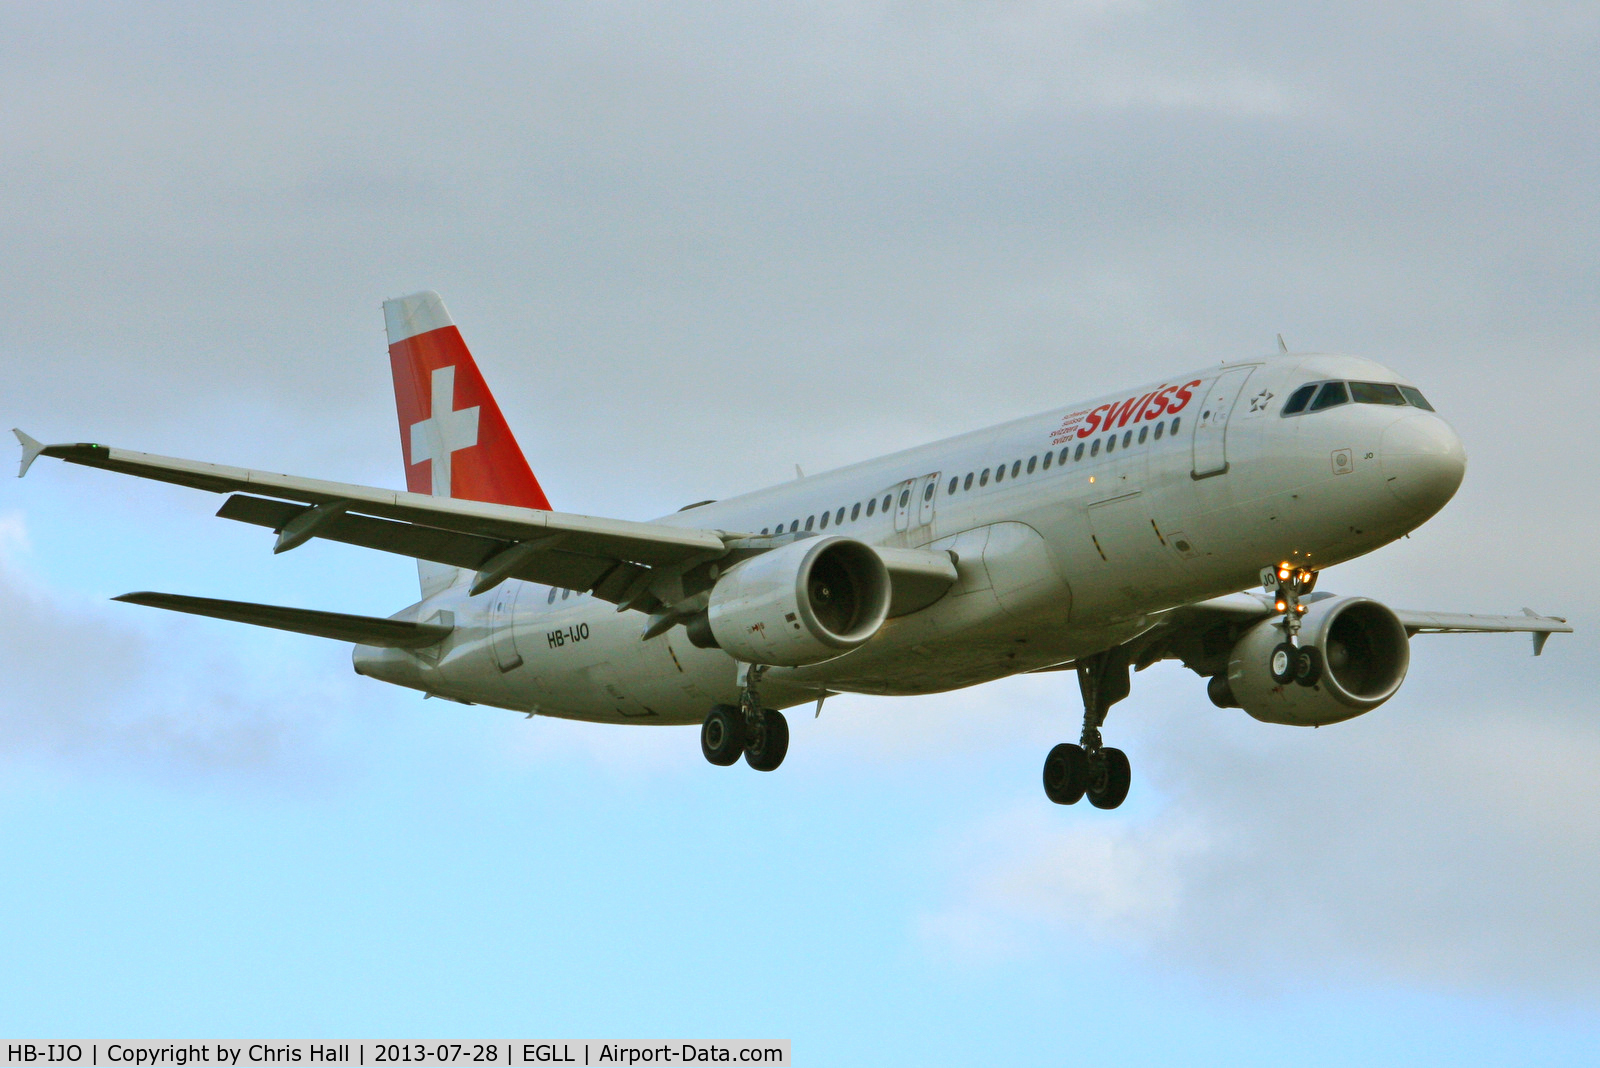 HB-IJO, 1997 Airbus A320-214 C/N 673, Swiss International Air Lines